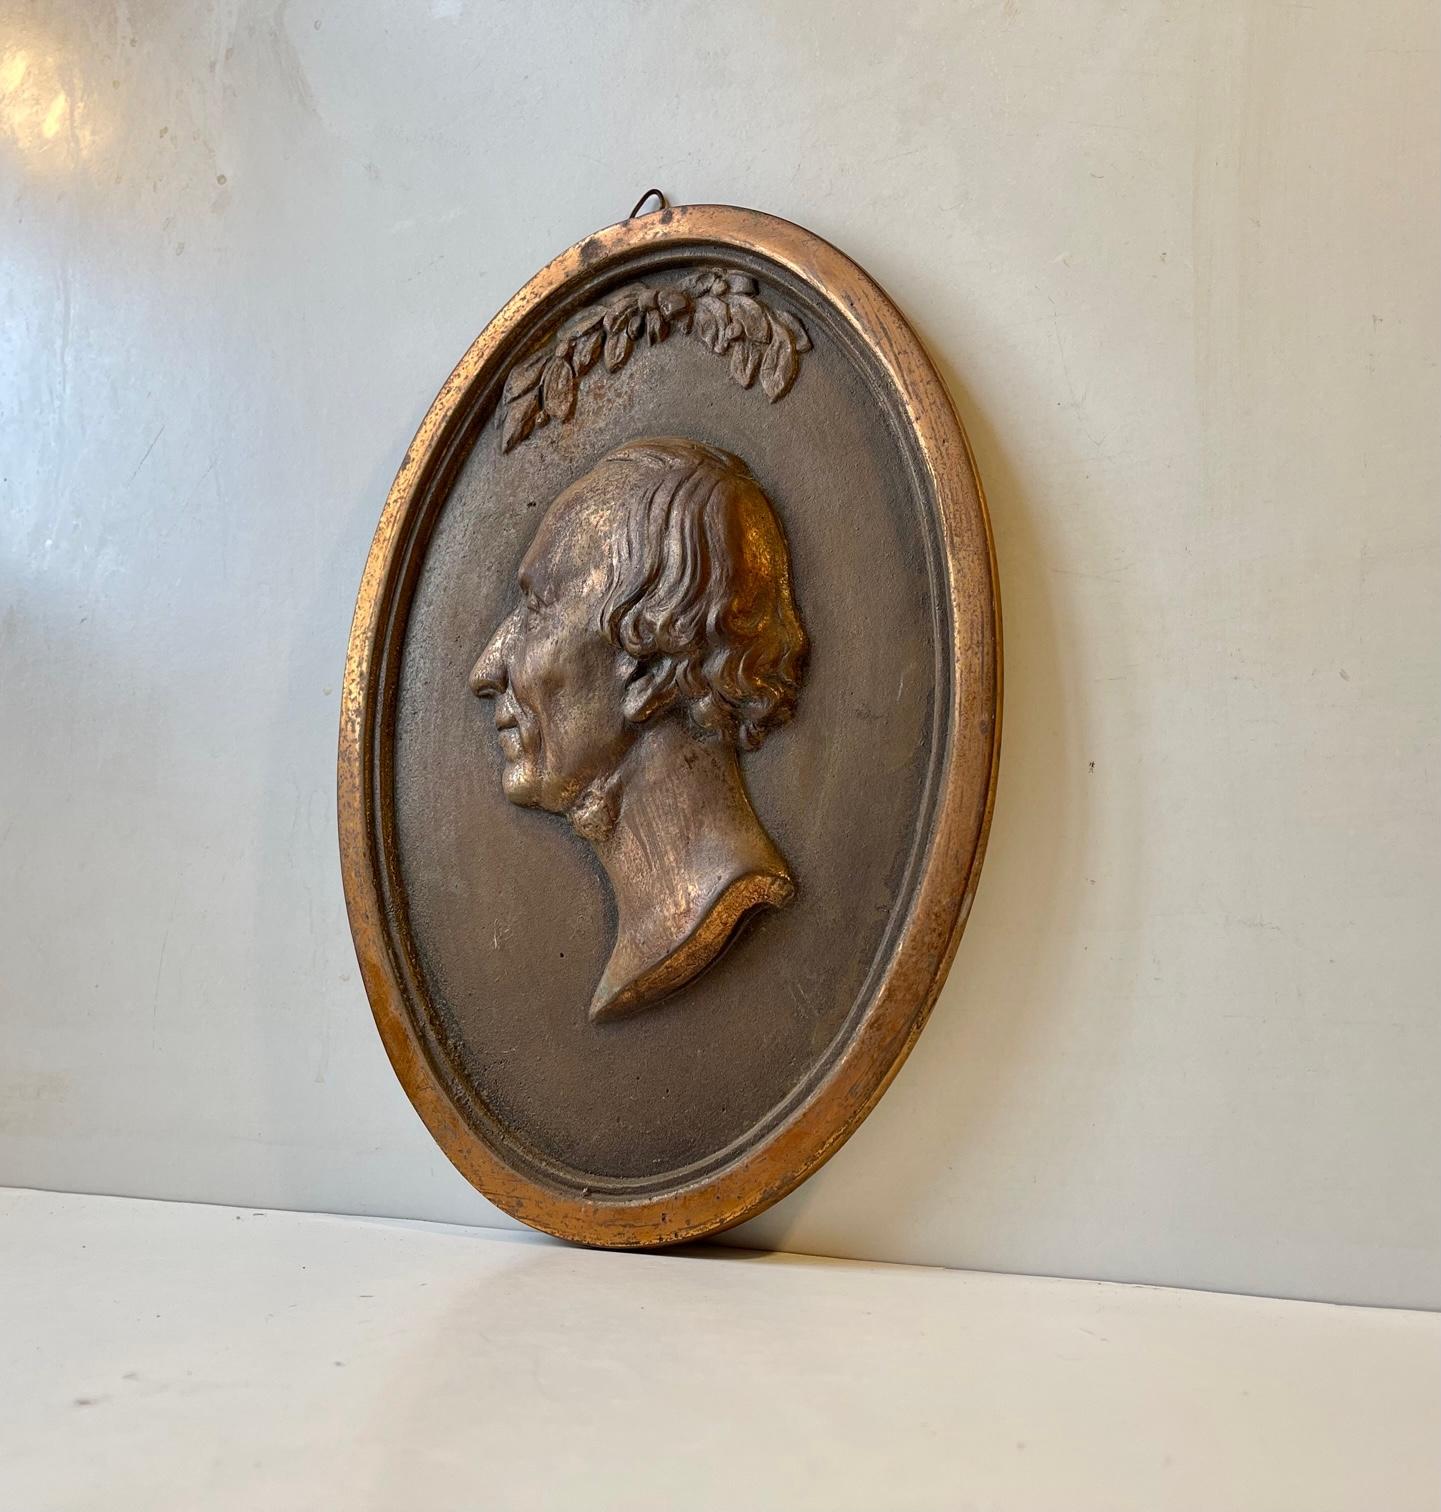 Eine wunderschön patinierte ovale Wandtafel aus massivem Kupfer. Es stellt den dänischen Märchenerzähler Hans Christian Andersen (1805-1875) dar. Diese besondere Platte wurde zwischen 1895 und 1915 in Kopenhagen, Dänemark, gegossen. Es ist ziemlich